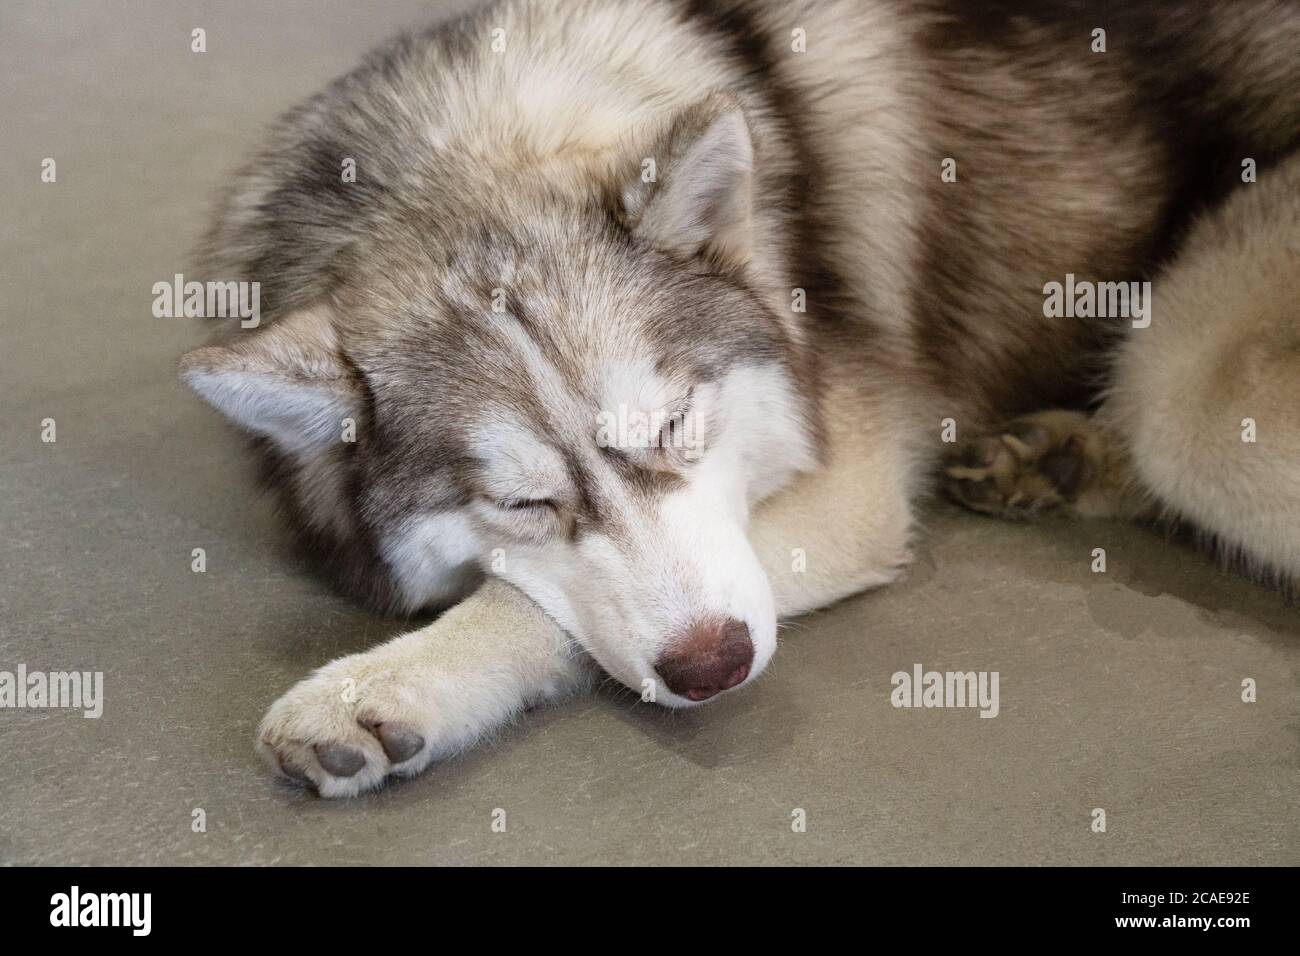 grigio, bianco e marrone sonno husky sul pavimento. pigro husky giace sul pavimento con occhi chiusi. ritratto di husky siberiano. il cane sembra lupo. Foto Stock